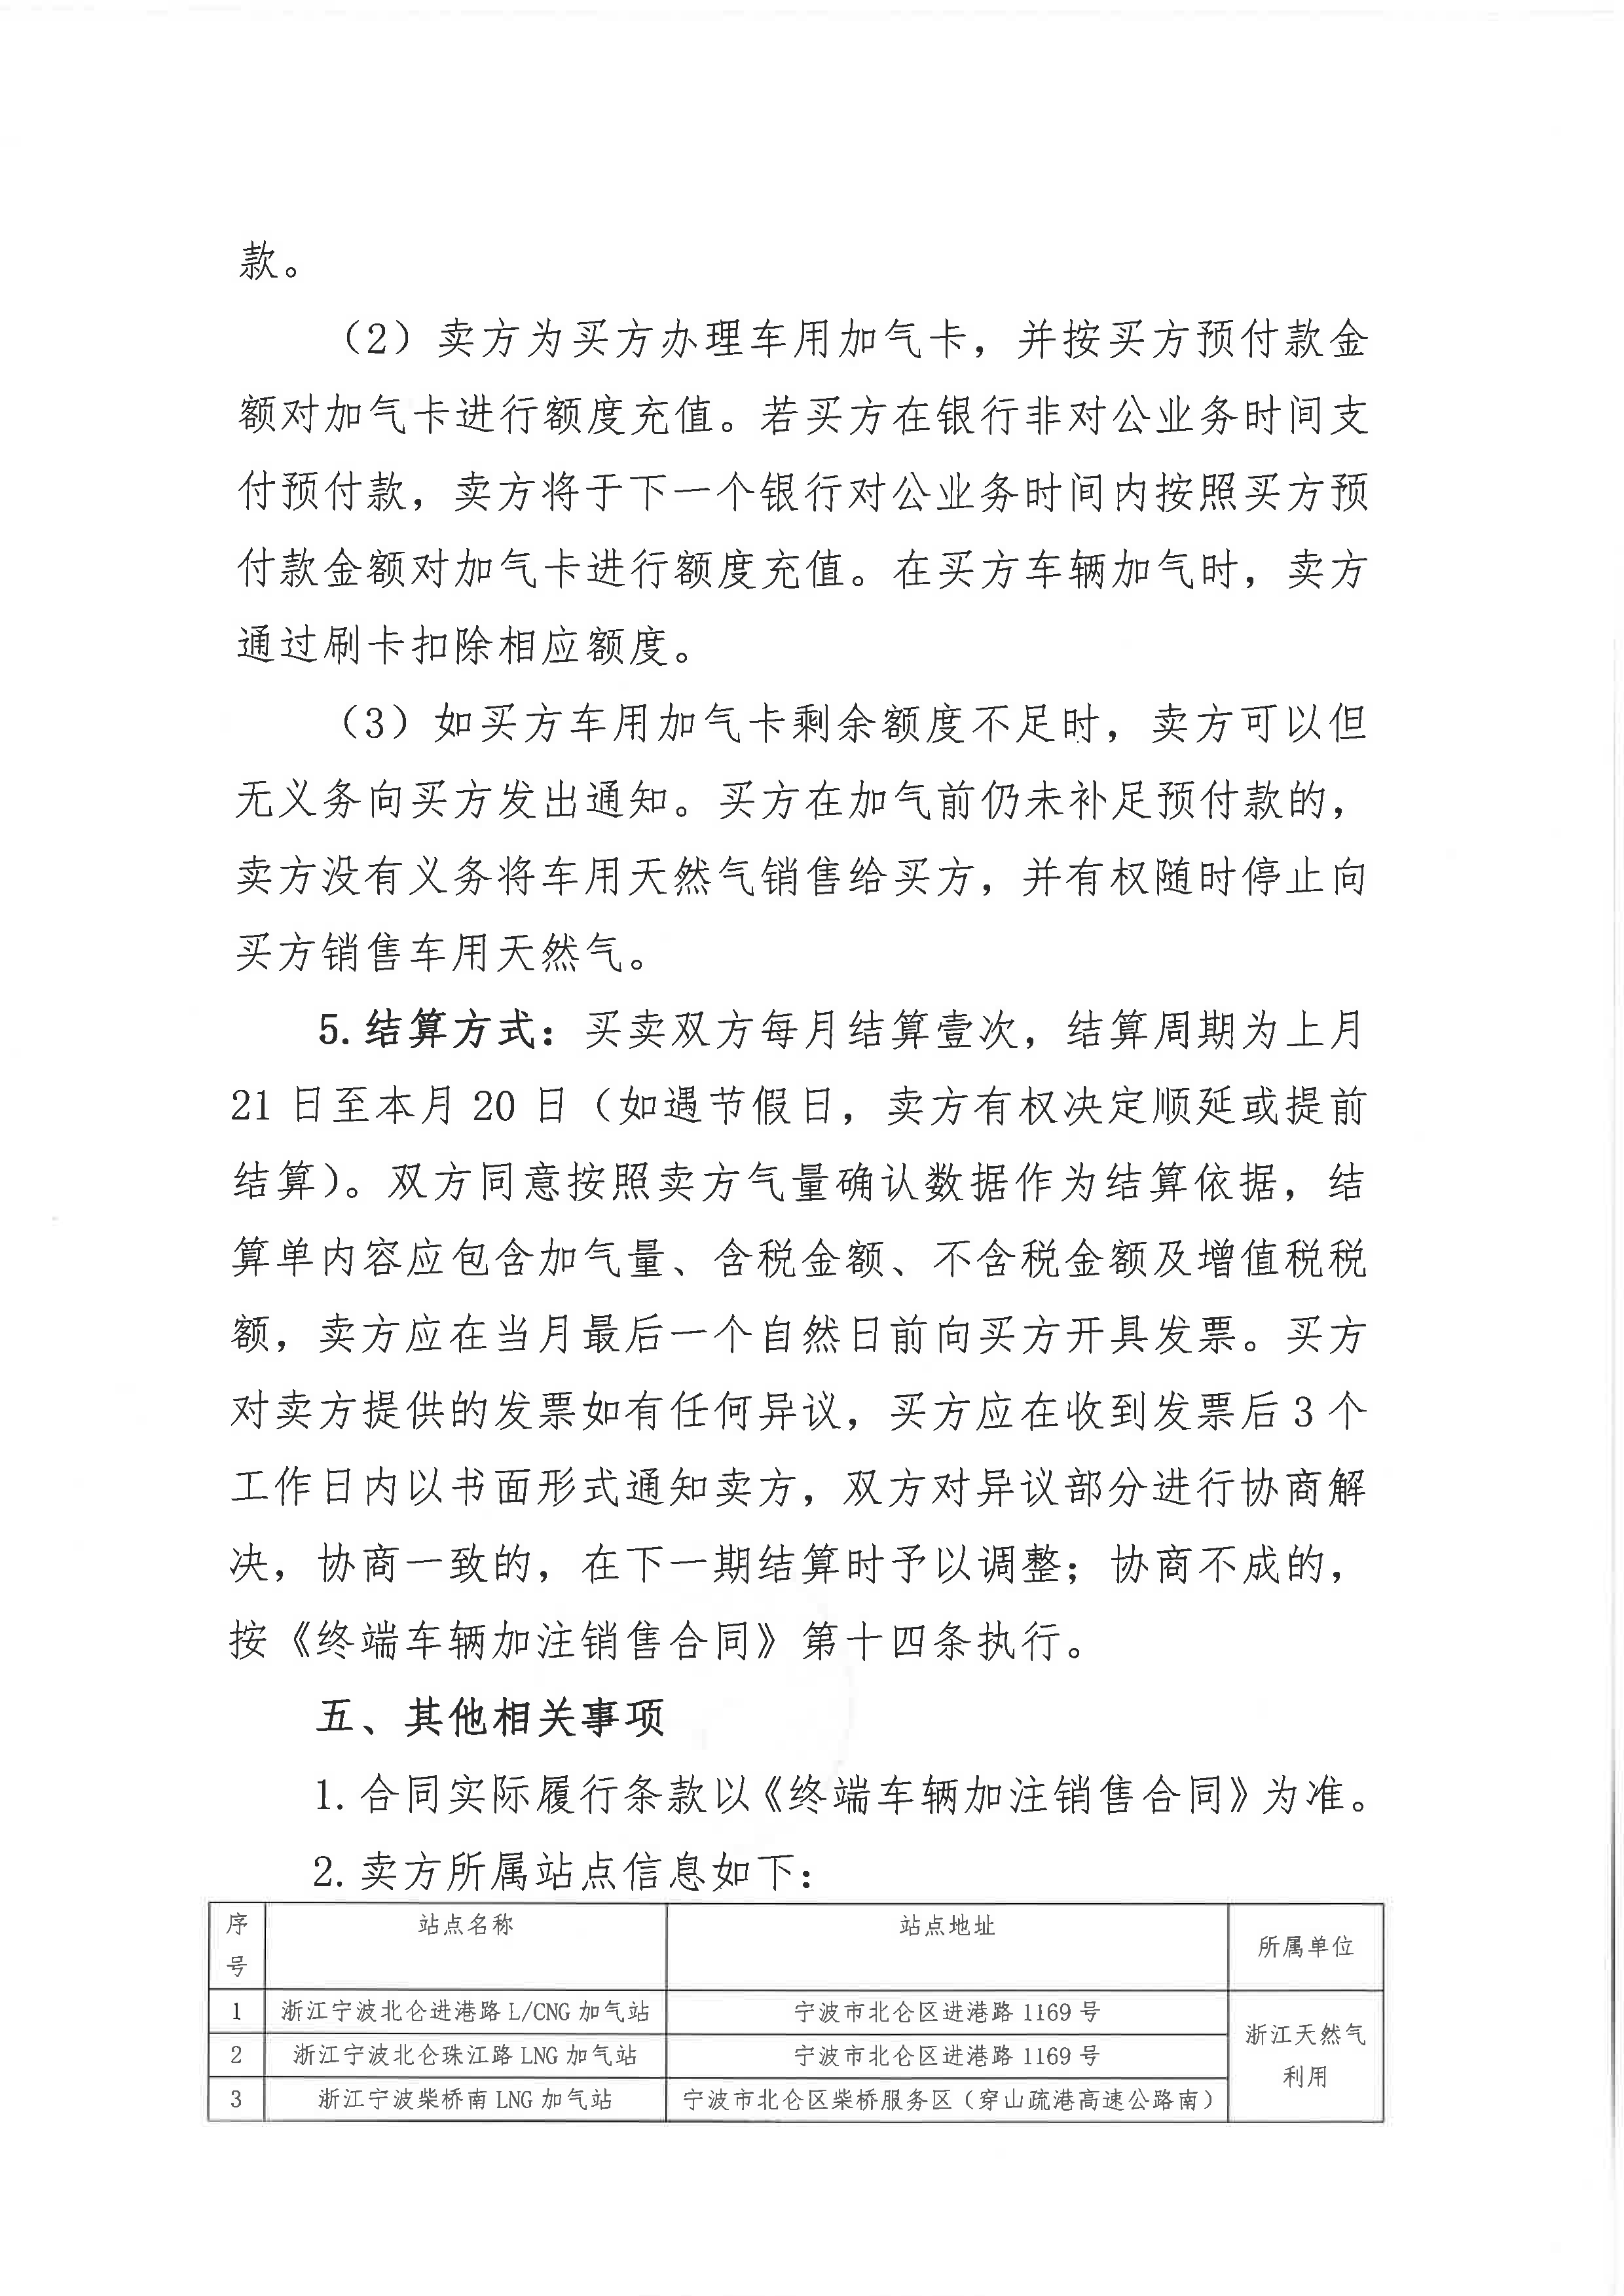 中海石油气电集团浙江分公司关于终端车辆加注合同线上签署的公告_页面_3.png